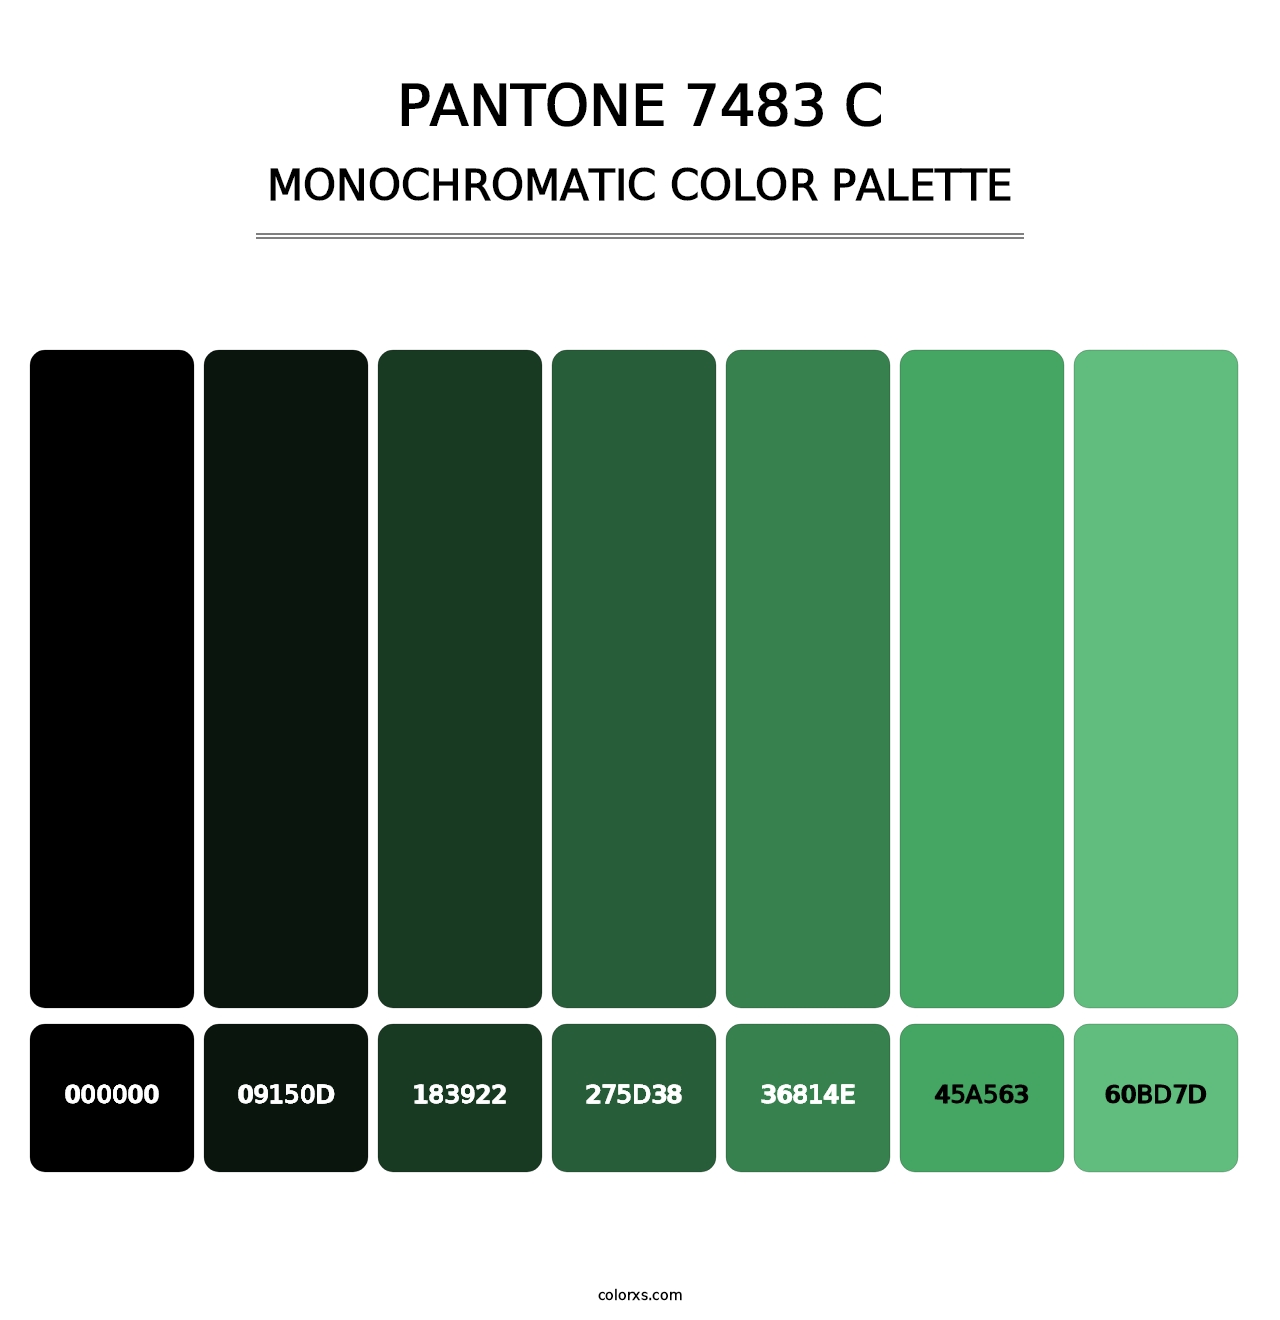 PANTONE 7483 C - Monochromatic Color Palette